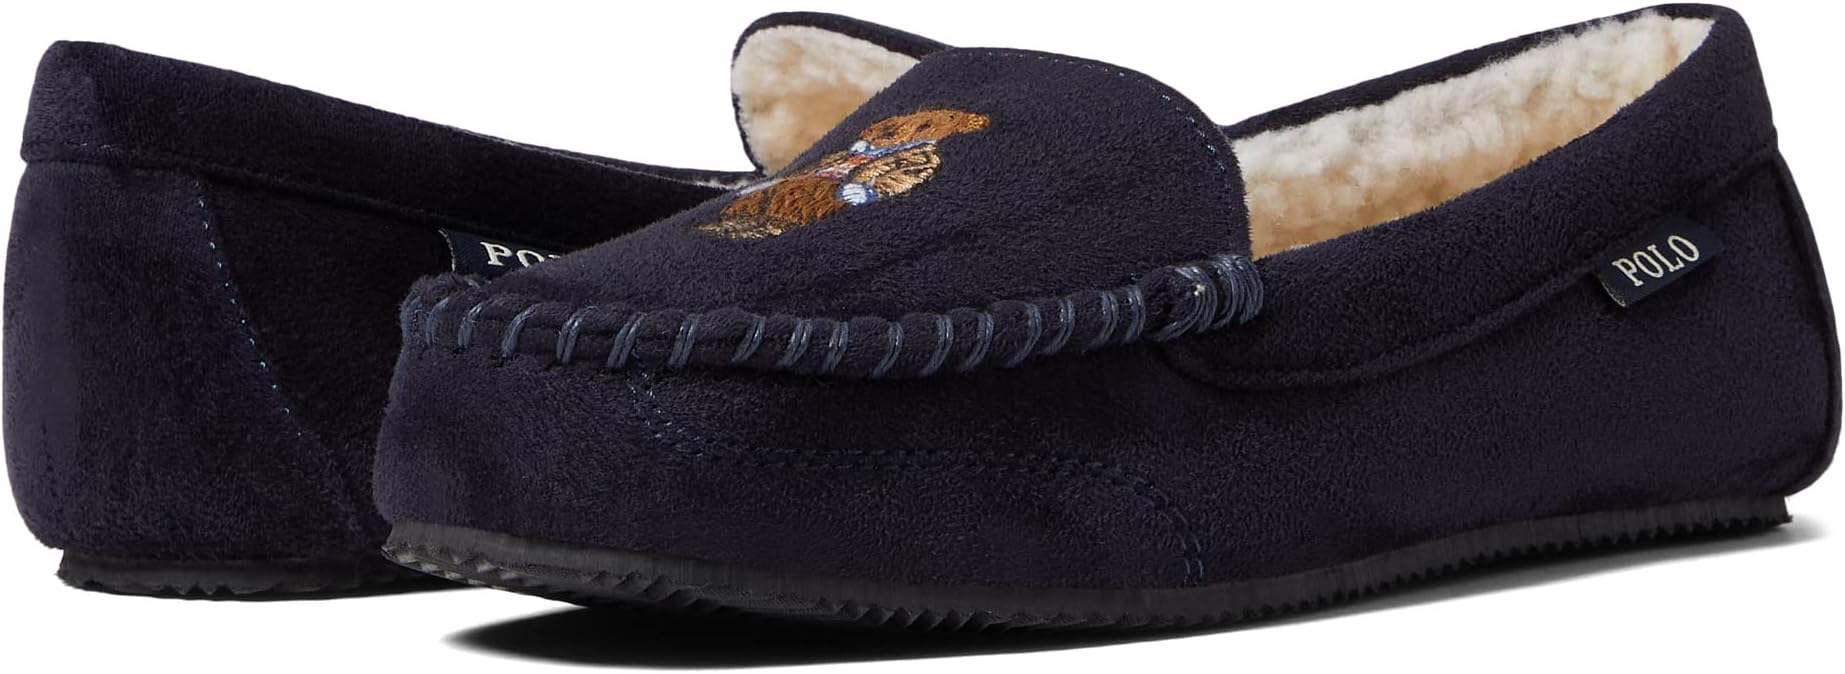 Тапочки Dezi Bear Moccasin Slipper Polo Ralph Lauren, темно-синий